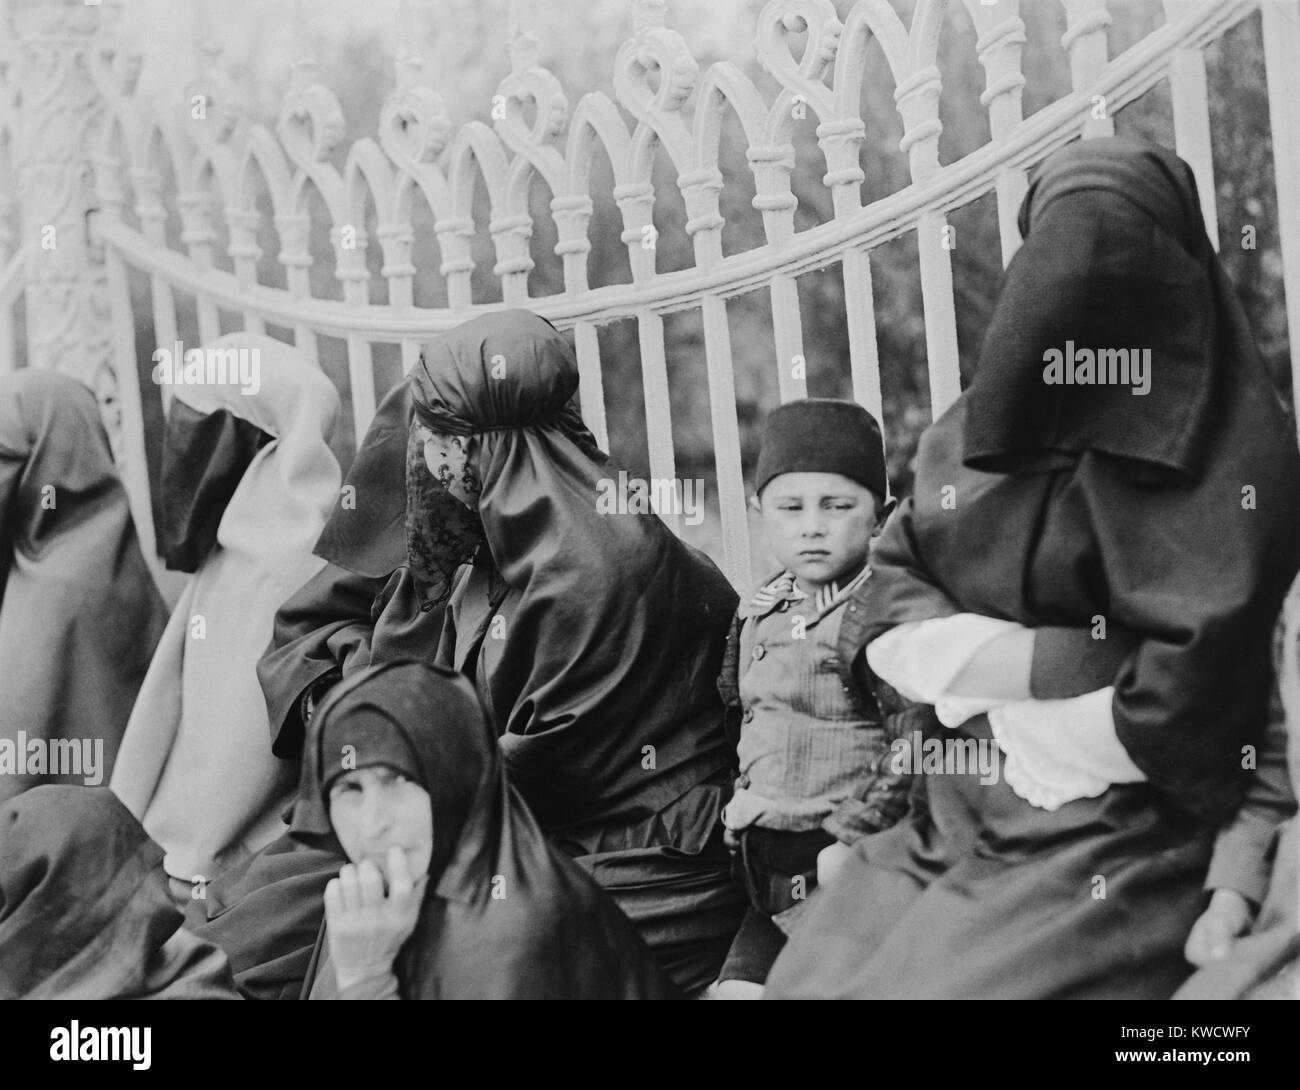 Las mujeres con velo islámico en Constantinopla en 1919. En la década de 1920, el nuevo líder turco, Kemal Ataturk, permitió a las mujeres la libertad de vestir ropa moderna (BSLOC 2017 1 116) Foto de stock